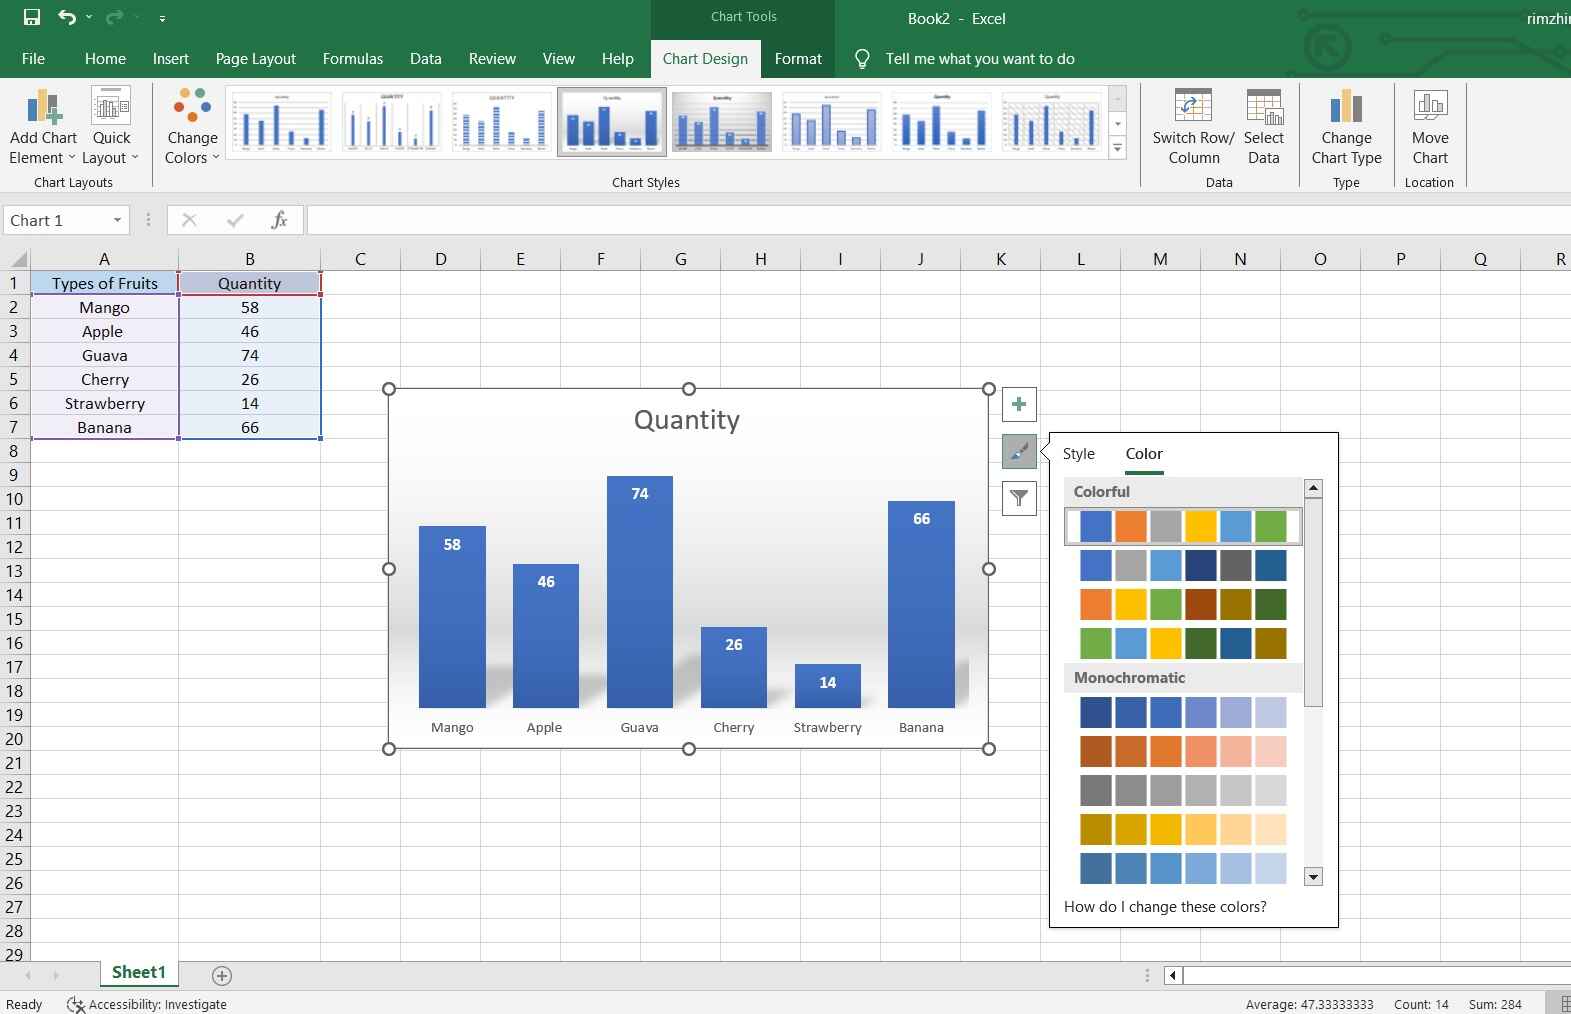 formato de color y estilos en el gráfico de Excel